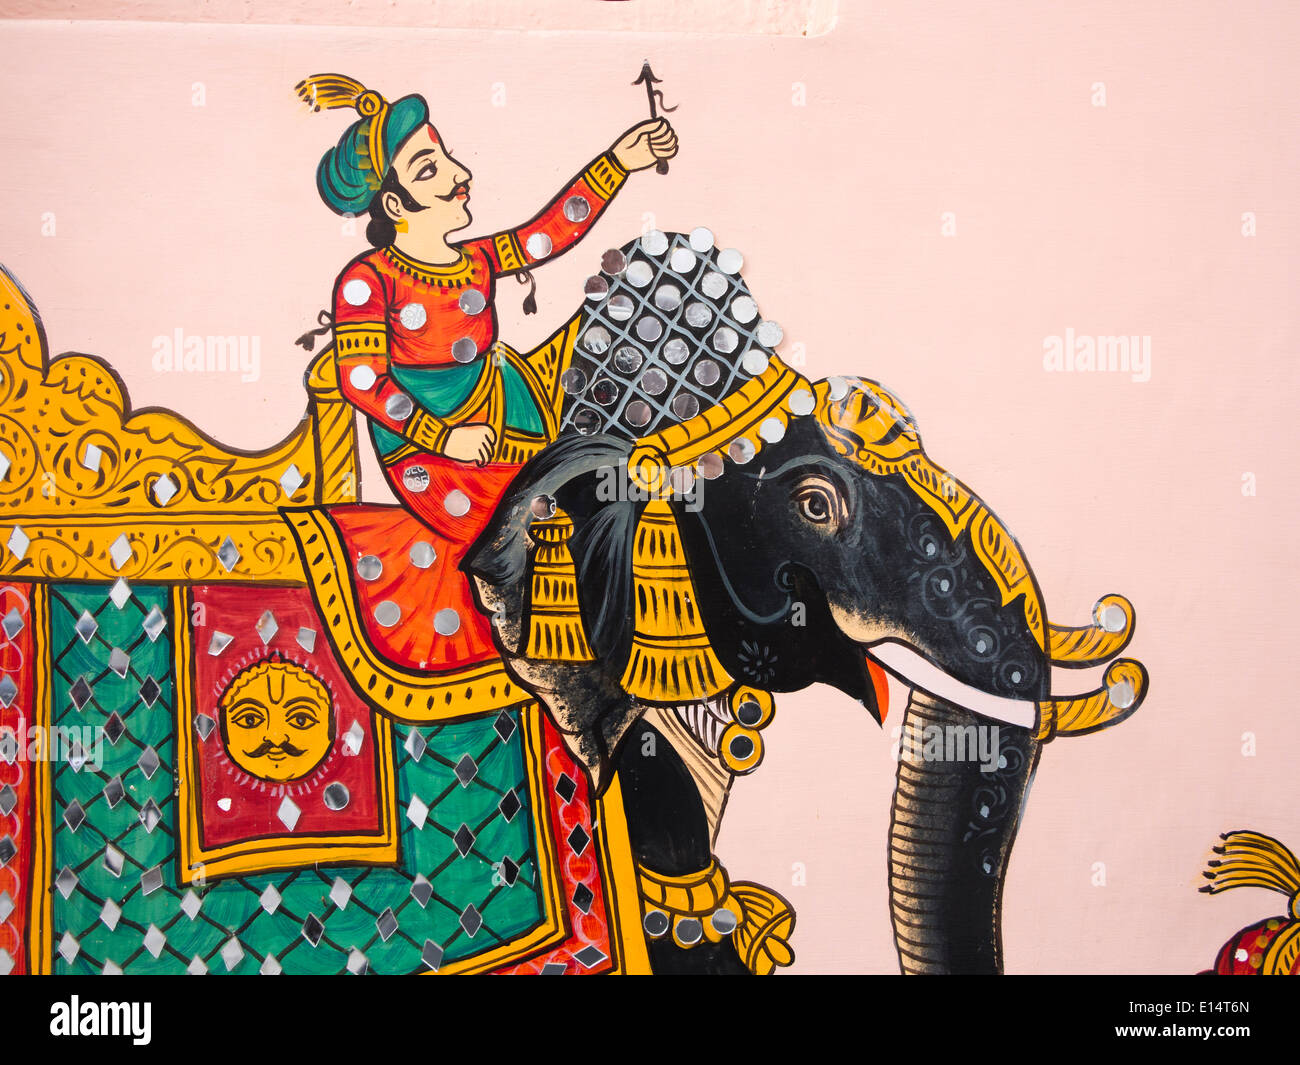 Indien, Rajasthan, Udaipur, Rajasthani Folk Art, Wandmalerei der Rajput Mann auf Elefanten mit Blume Stockfoto